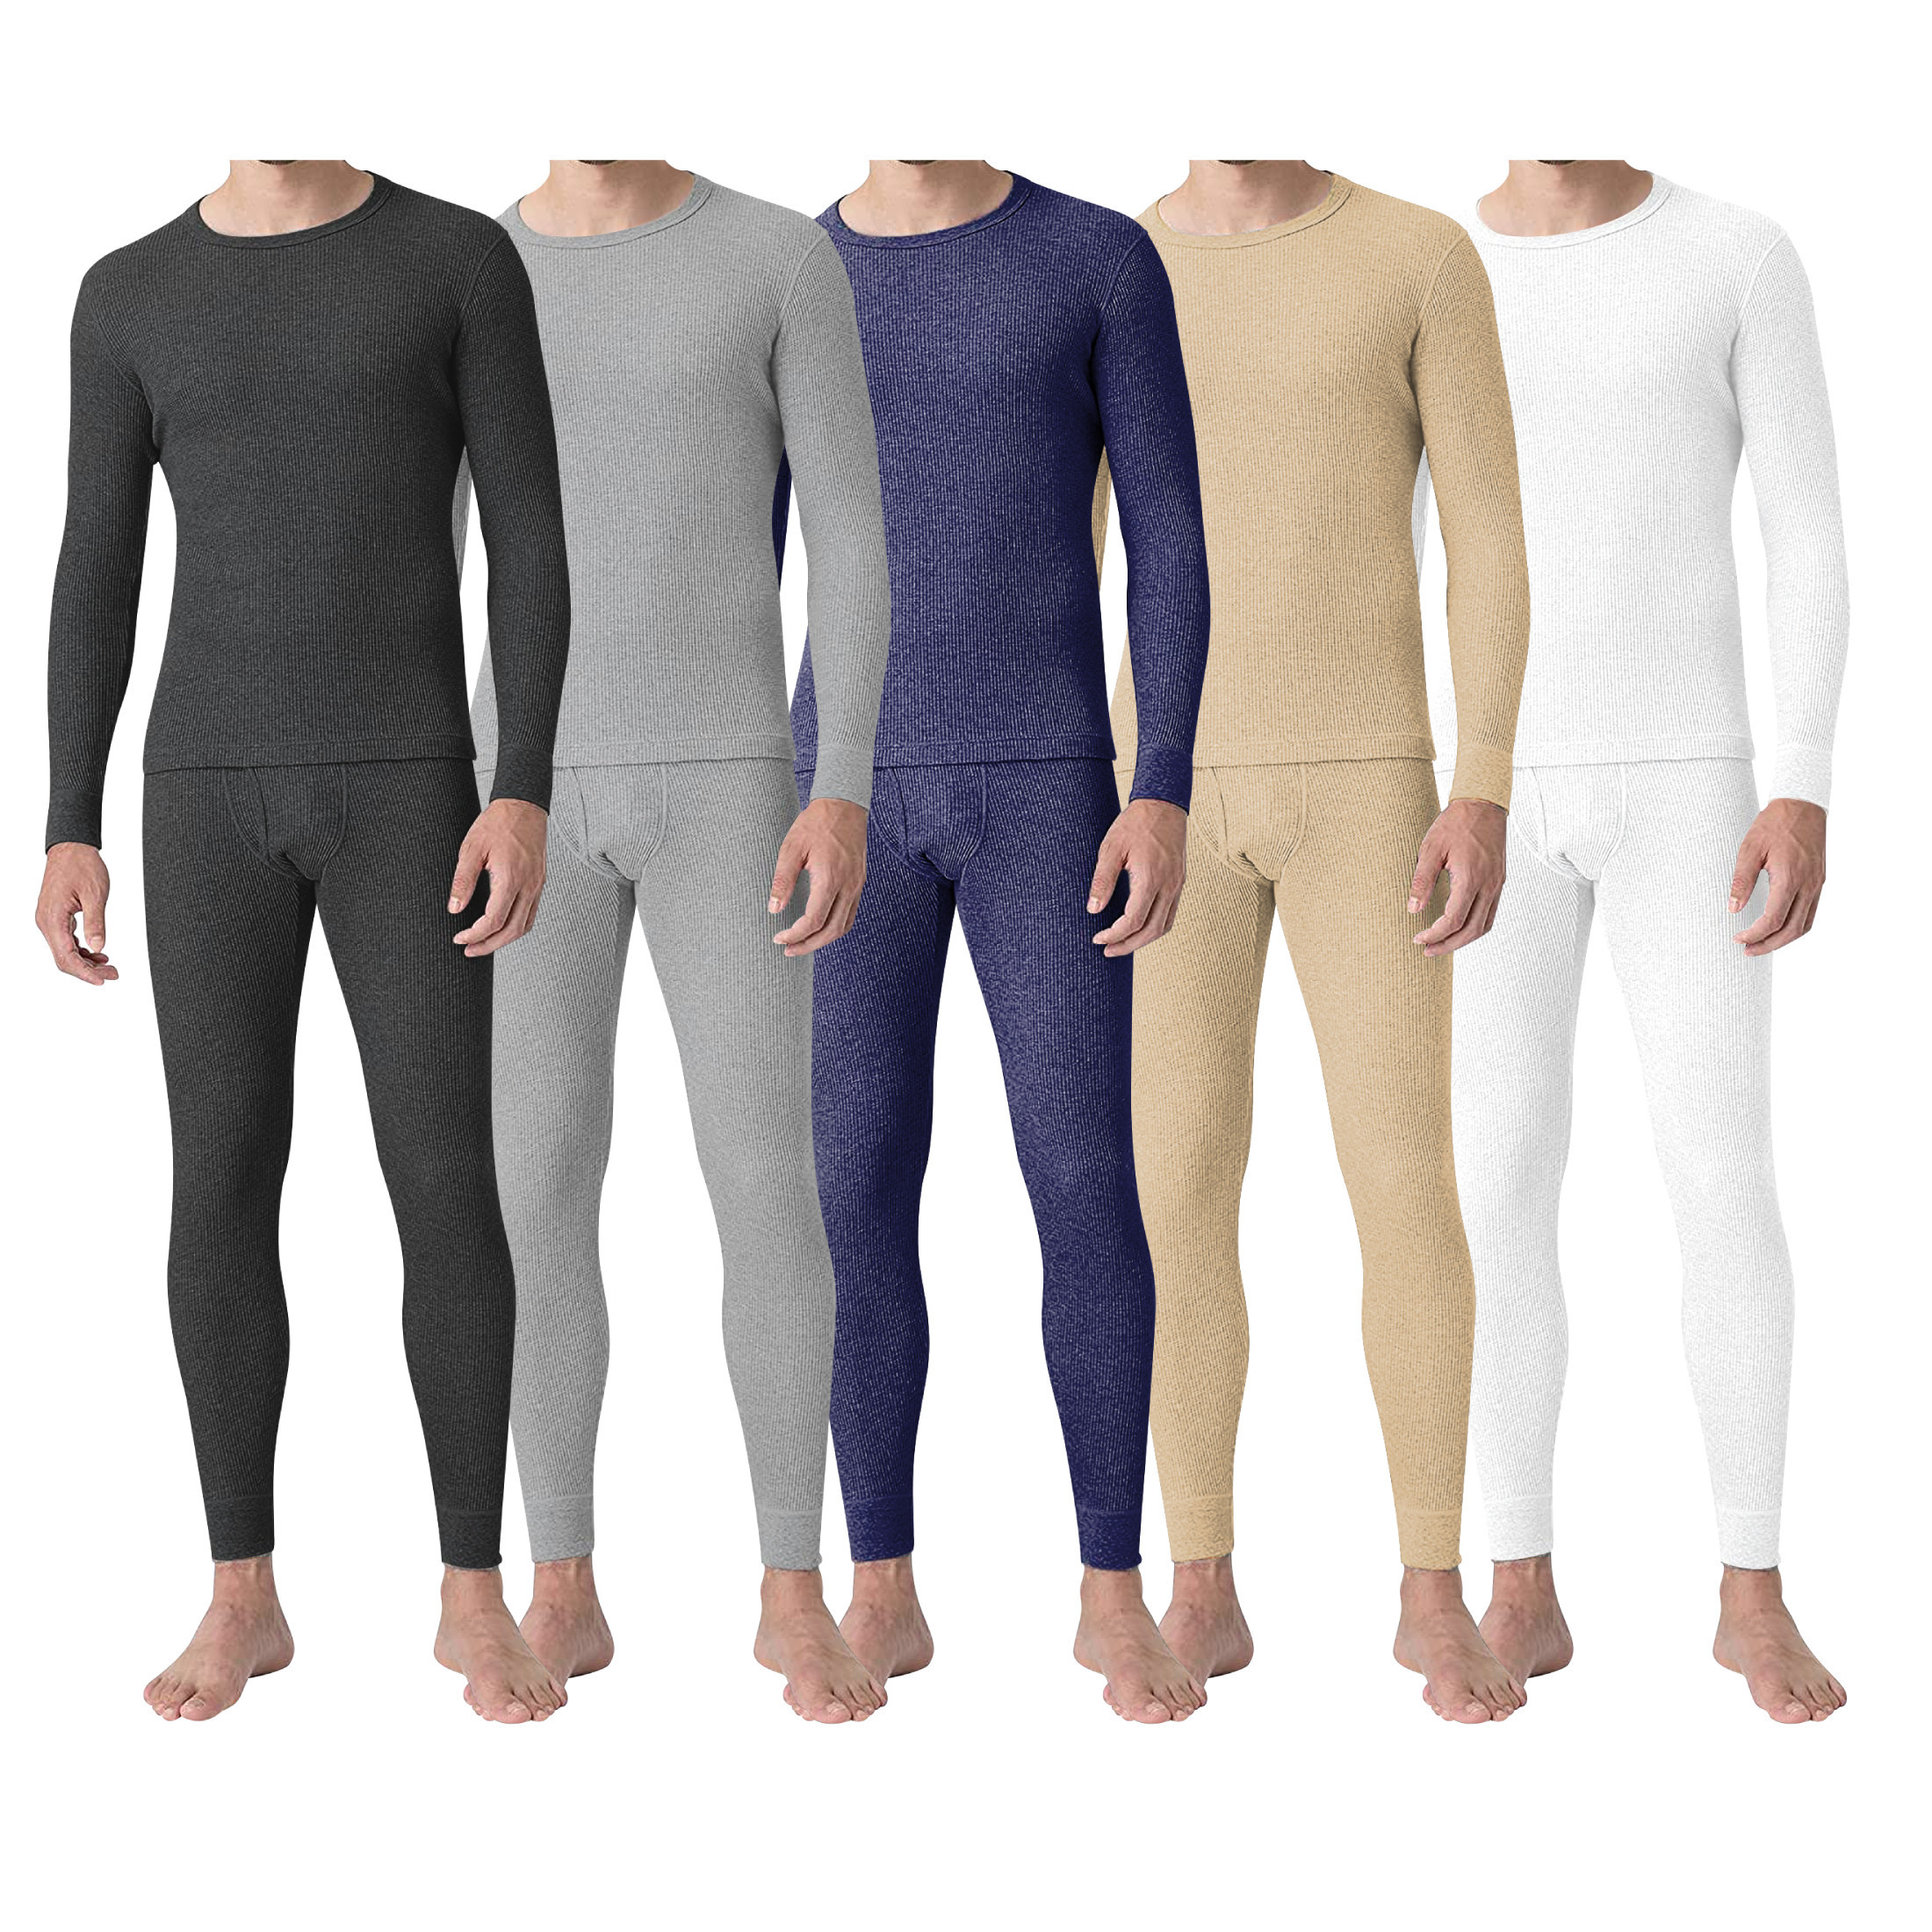 2-Piece: Men's Super Soft Cotton Waffle Knit Winter Thermal Underwear Set - Grey, Medium